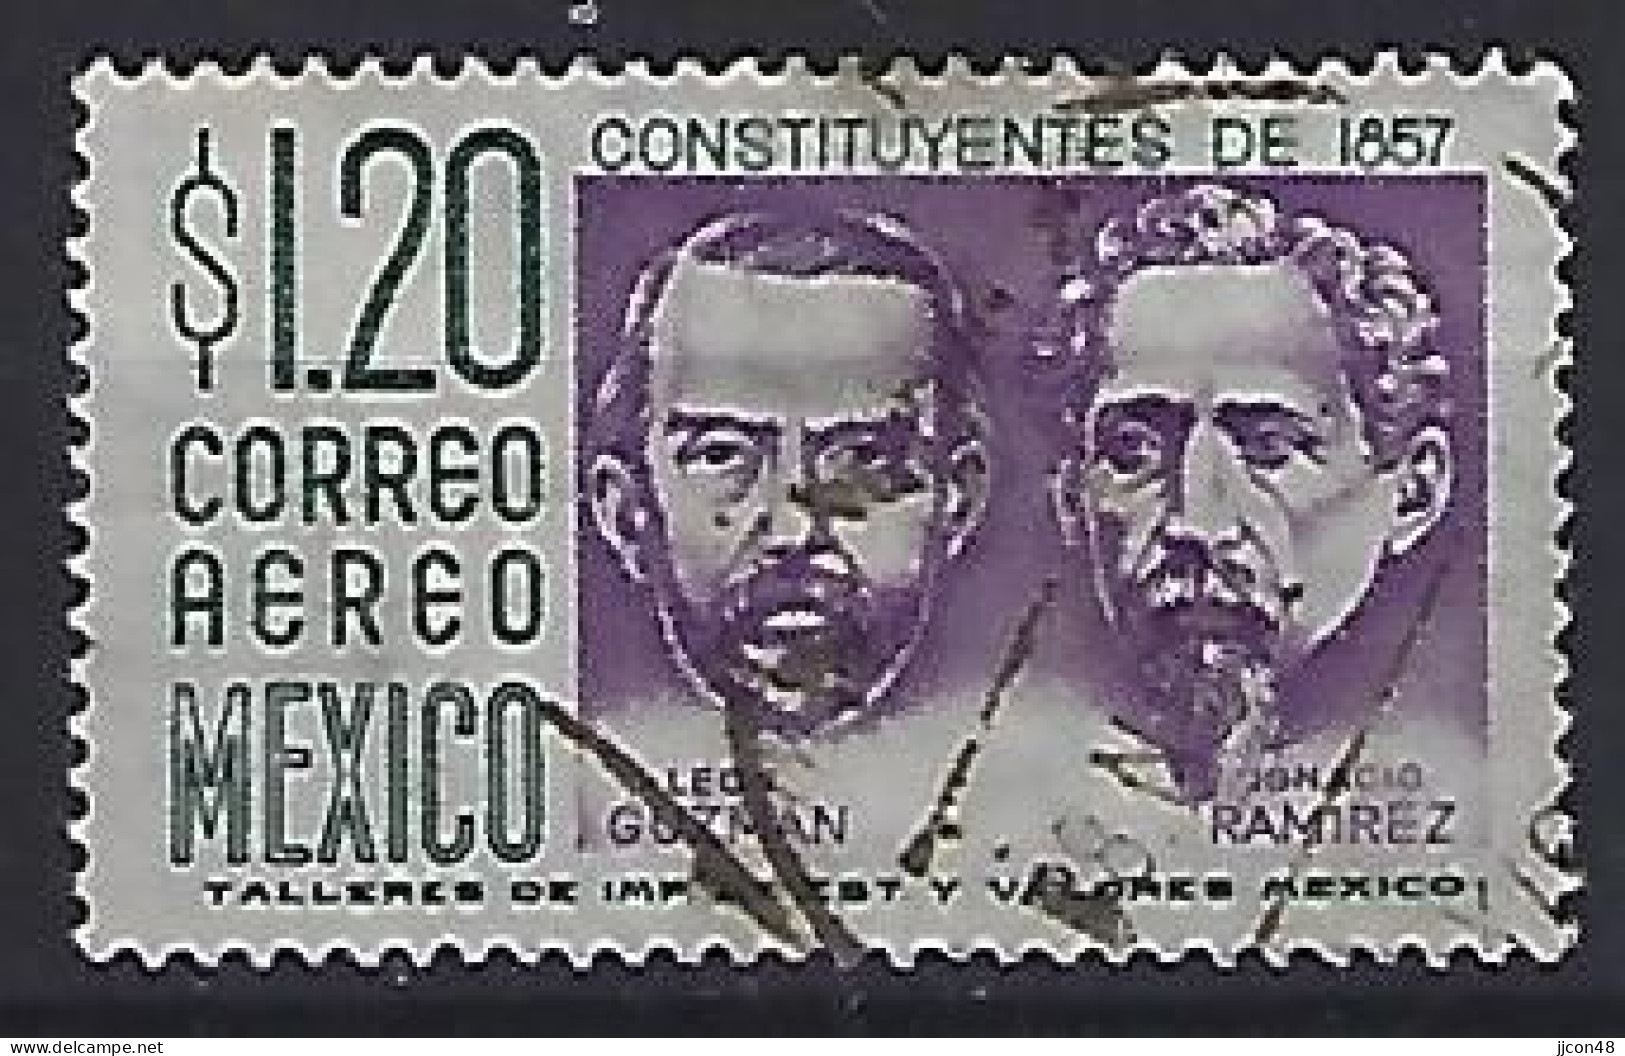 Mexico 1956-75  Einheimische Bilder (o) Mi.1066 X (issued 1956) - Mexiko